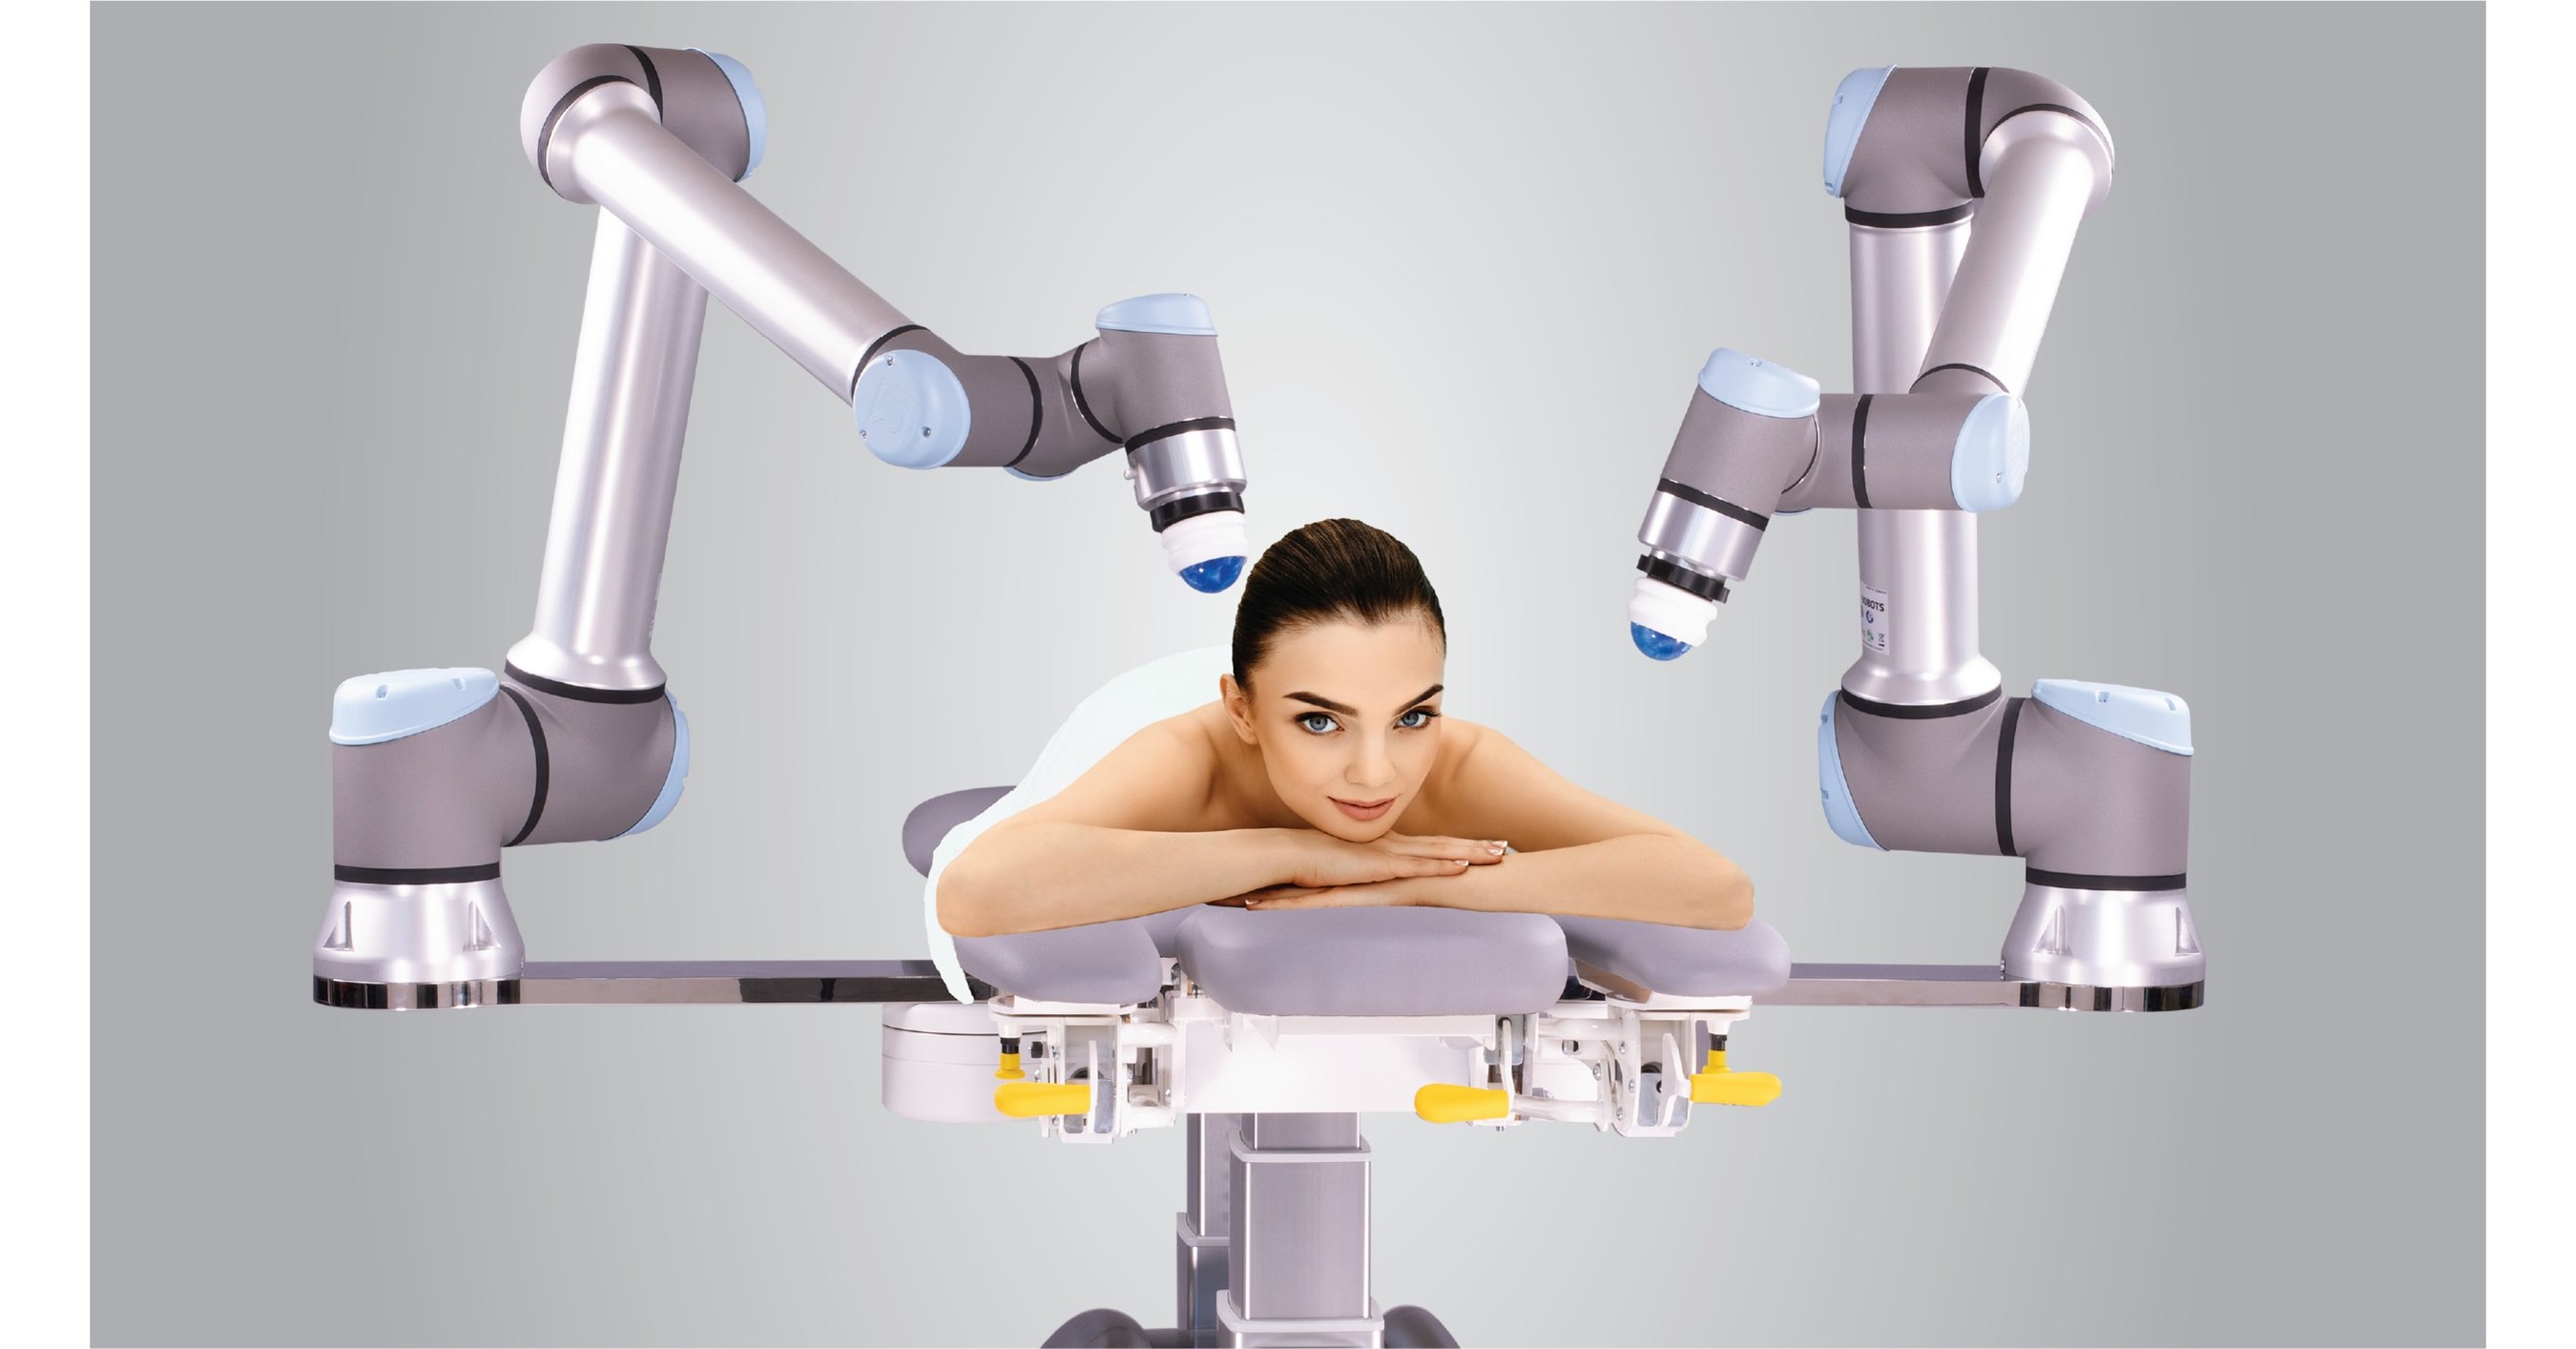 Робот массажист. Робот массажист машинка. Продукция роботы Сиасан. Робот массажист для спины китайский в виде человека.